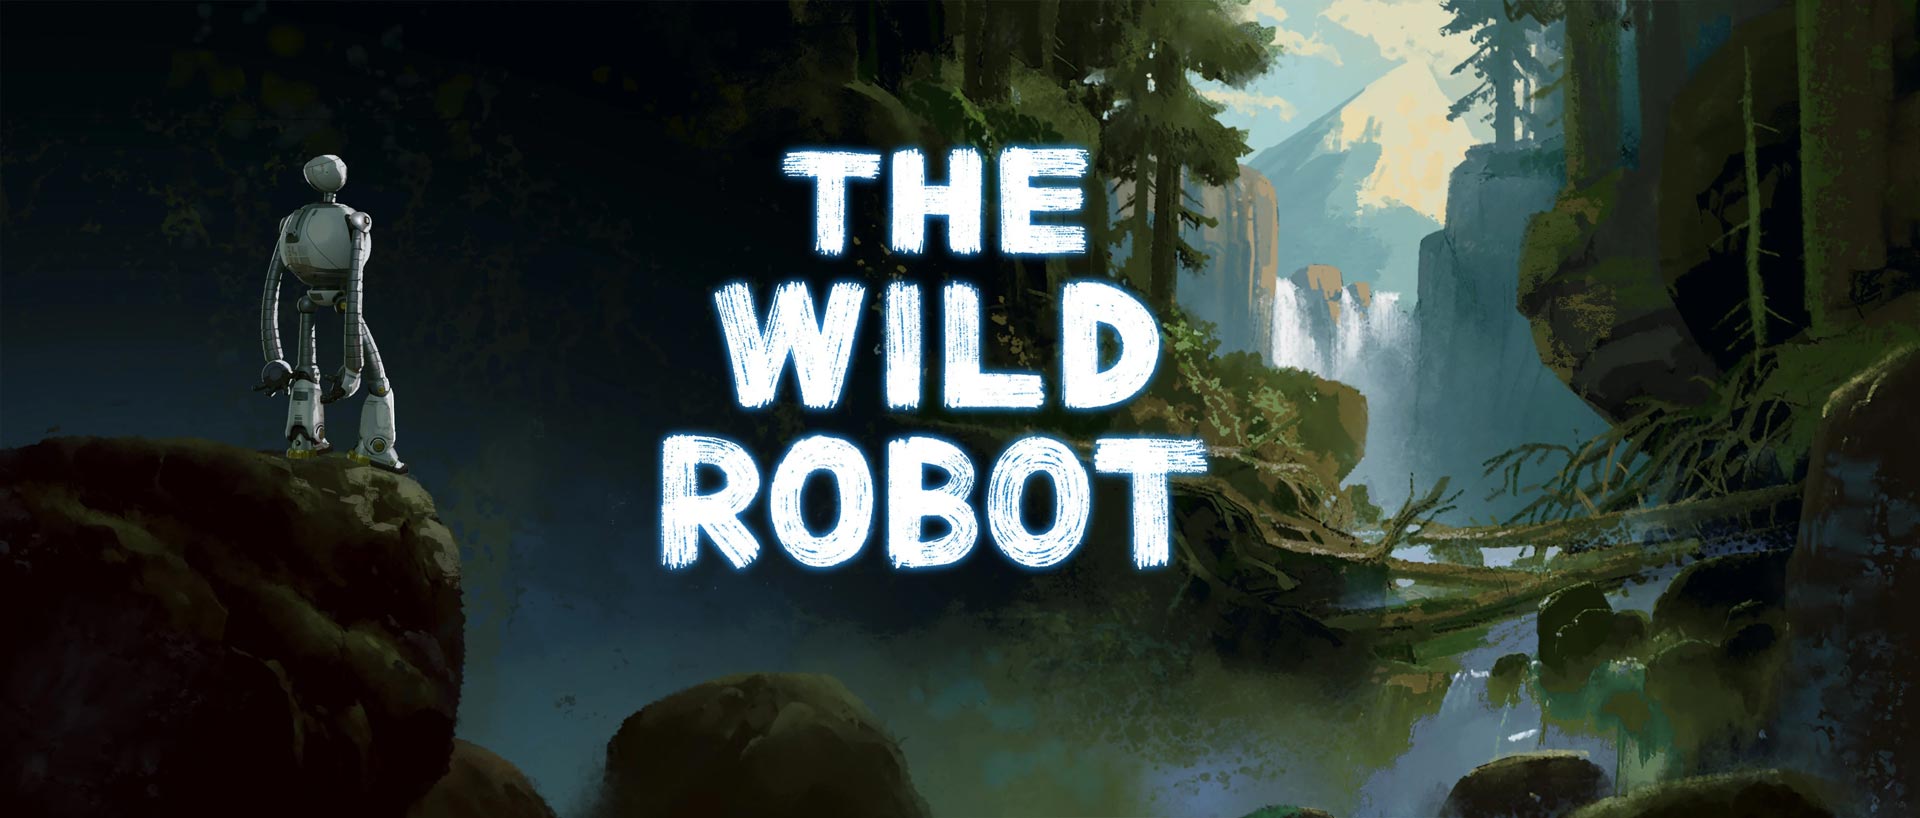 بنر فیلم ربات وحشی یک ربات در میان جنگل و طبیعت